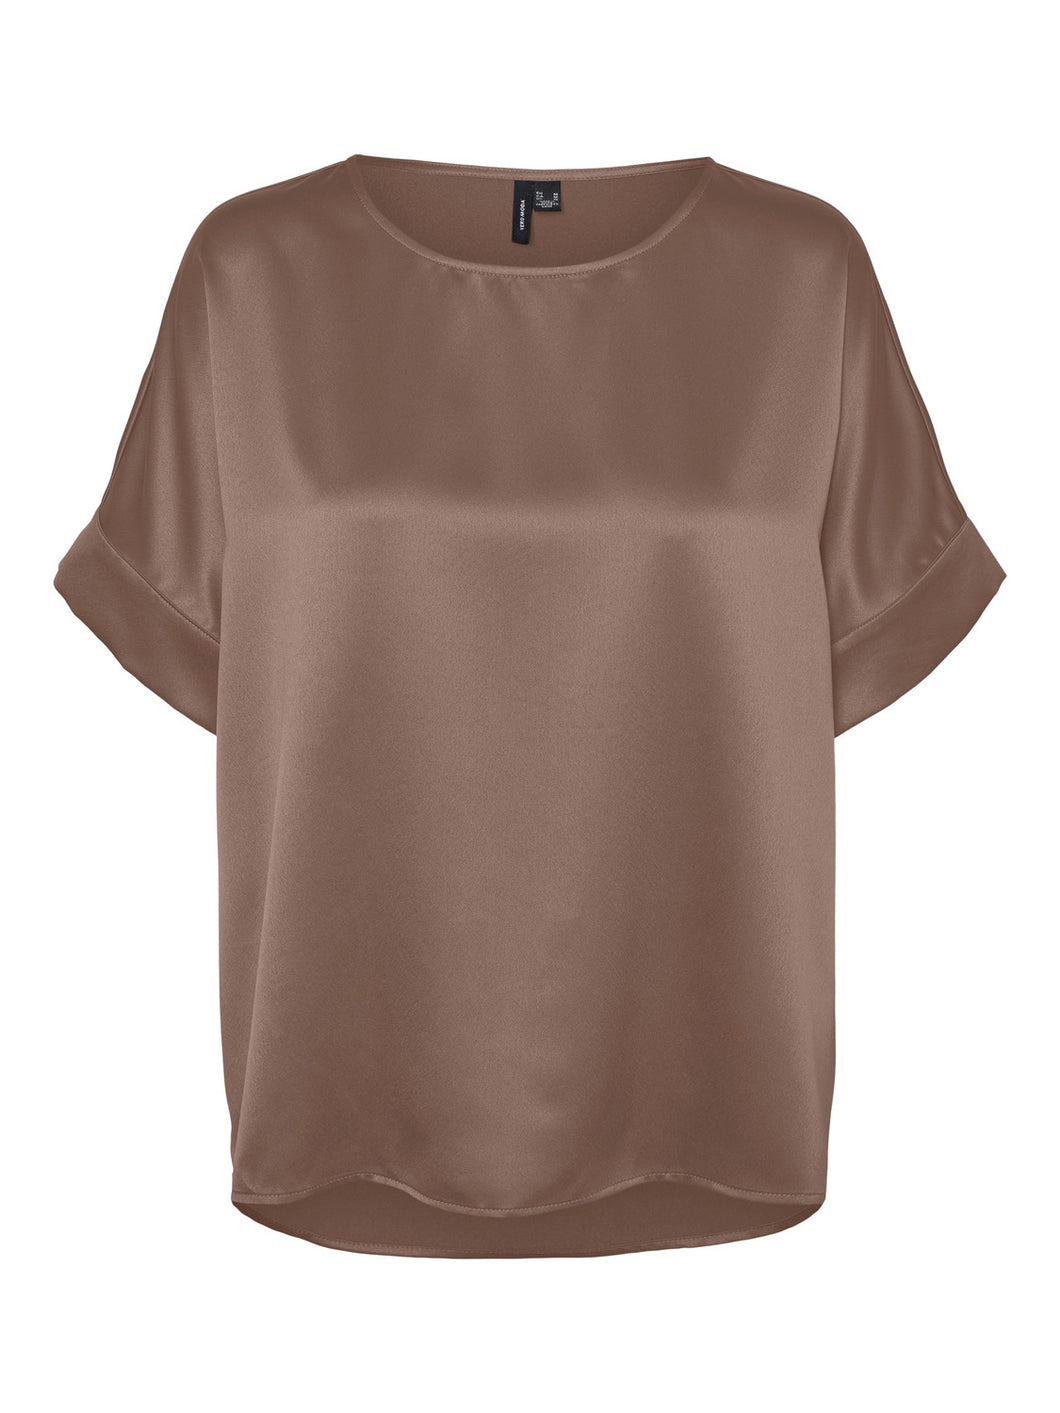 VMMERLE T-Shirts & Tops - Brown Lentil